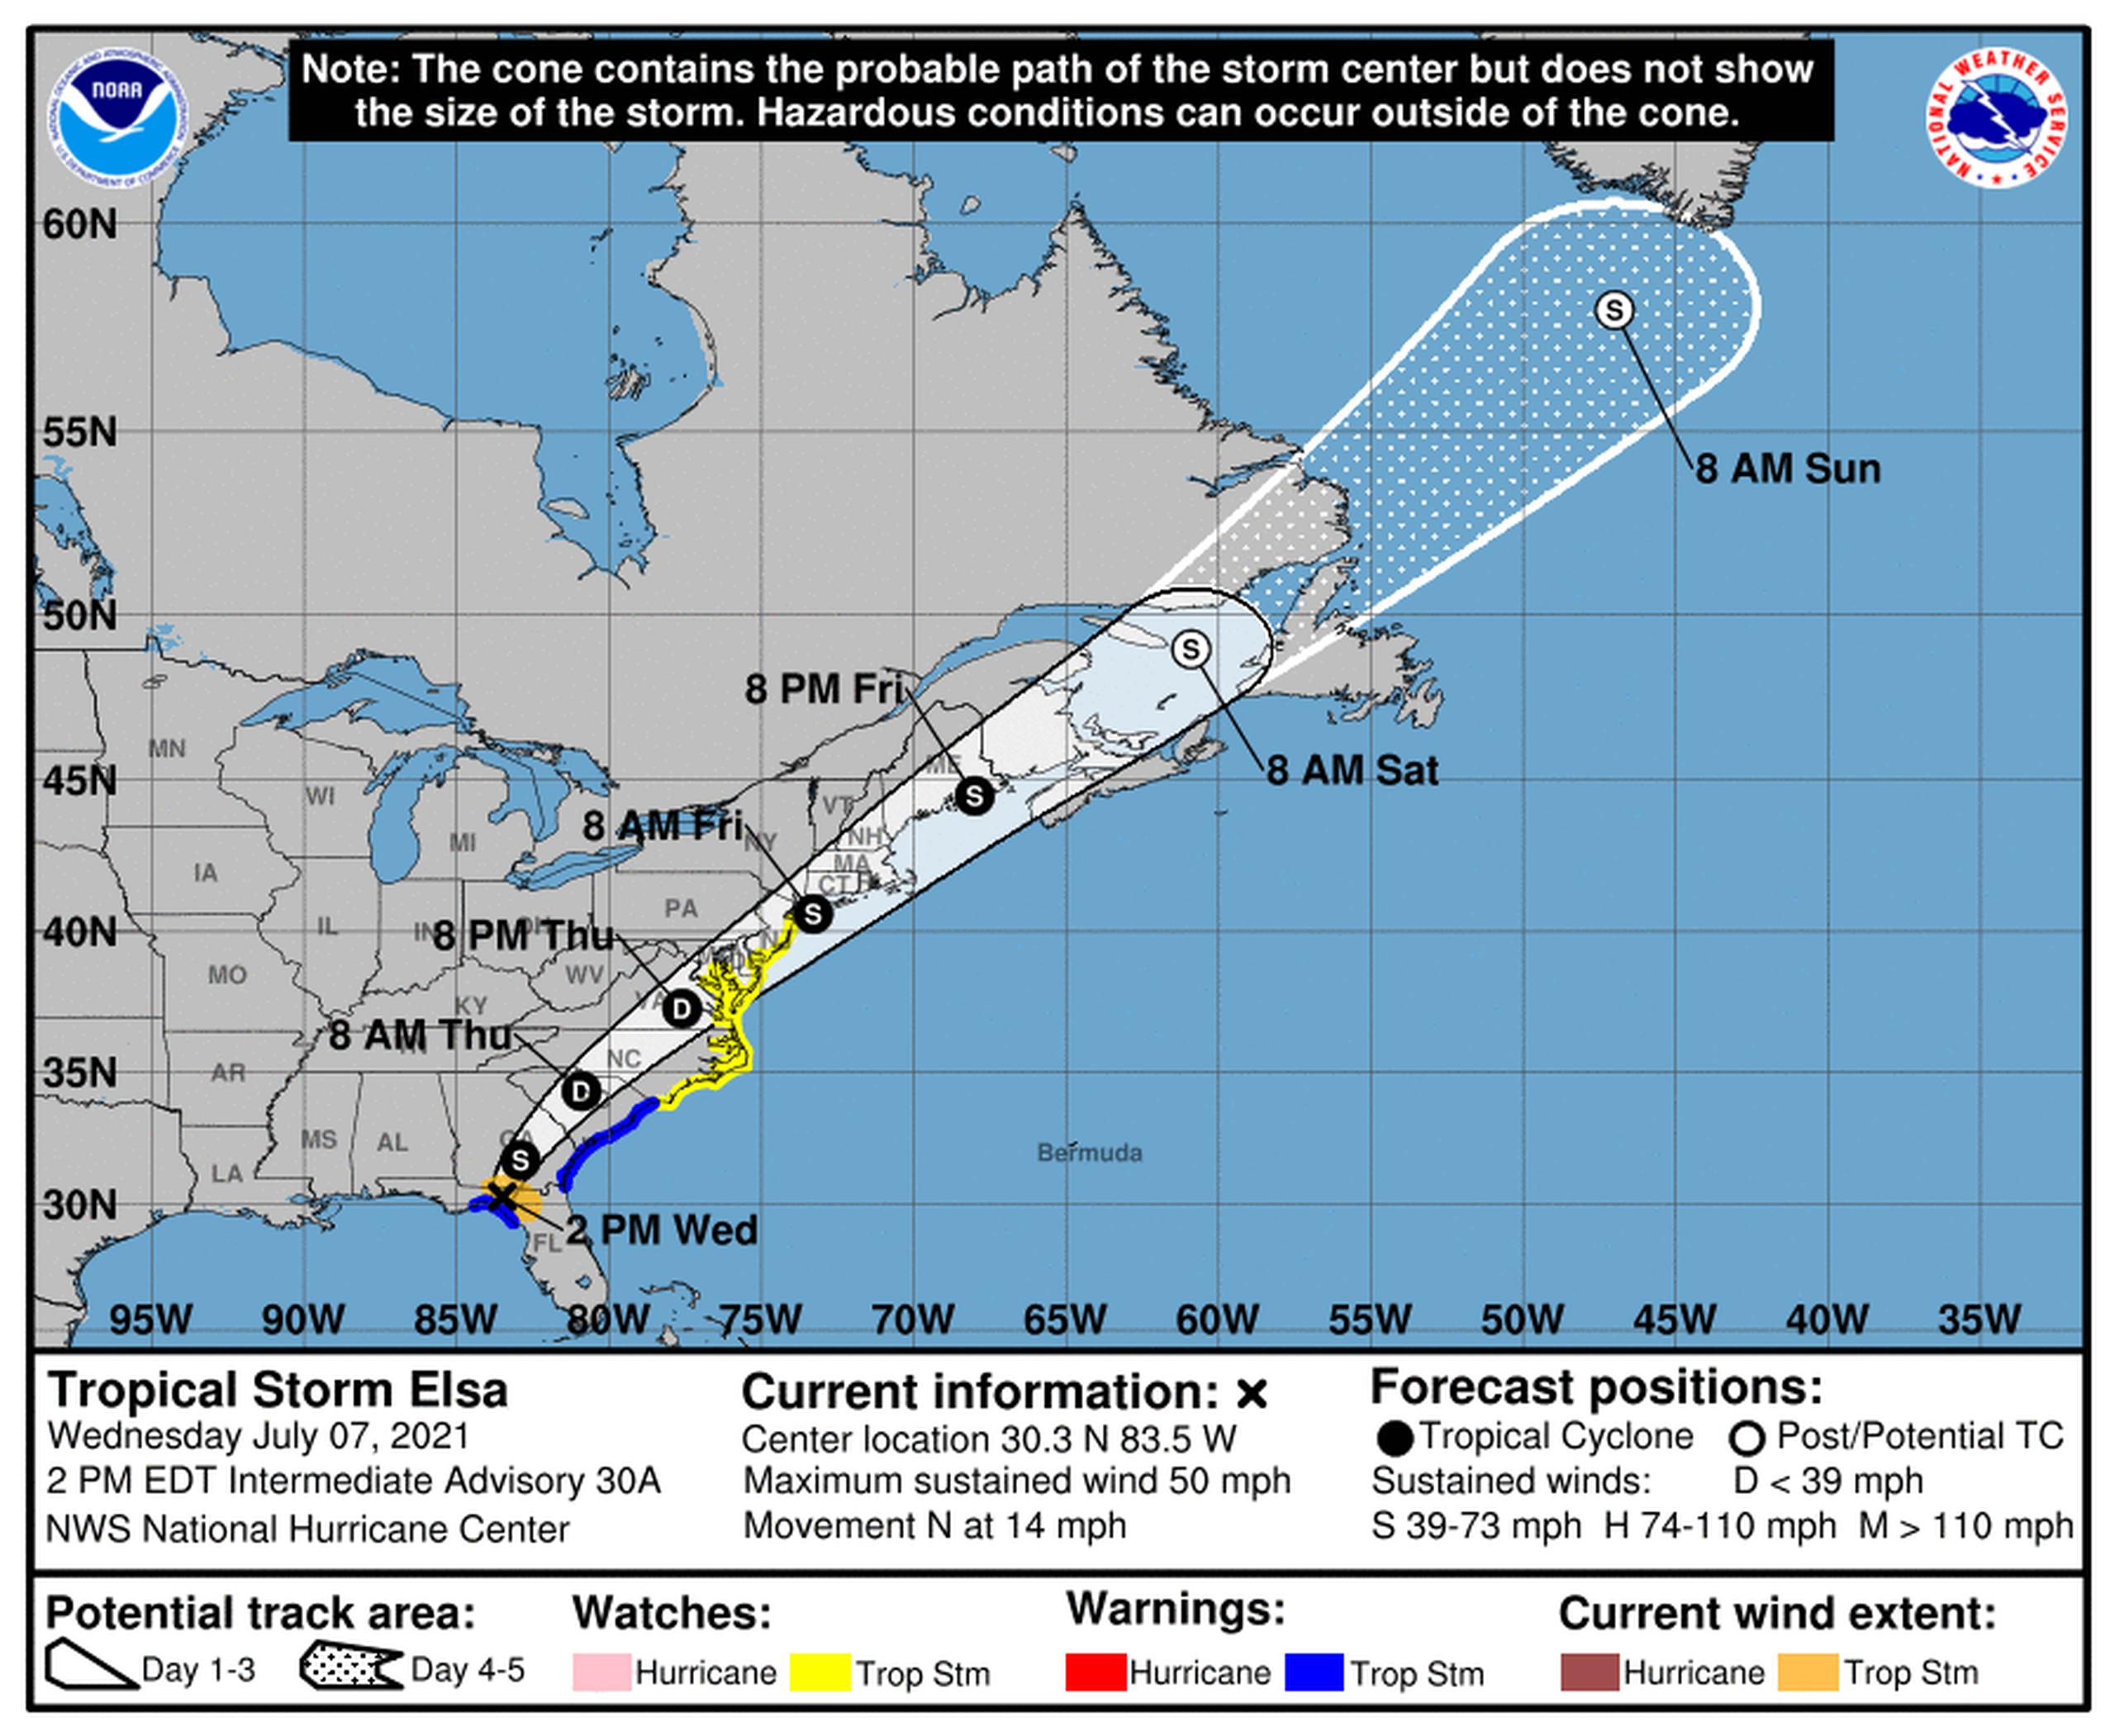 Pronóstico de la tormenta tropical Elsa emitido a las 2:00 de la tarde del 7 de julio de 2021 por el Centro Nacional de Huracanes de los Estados Unidos.